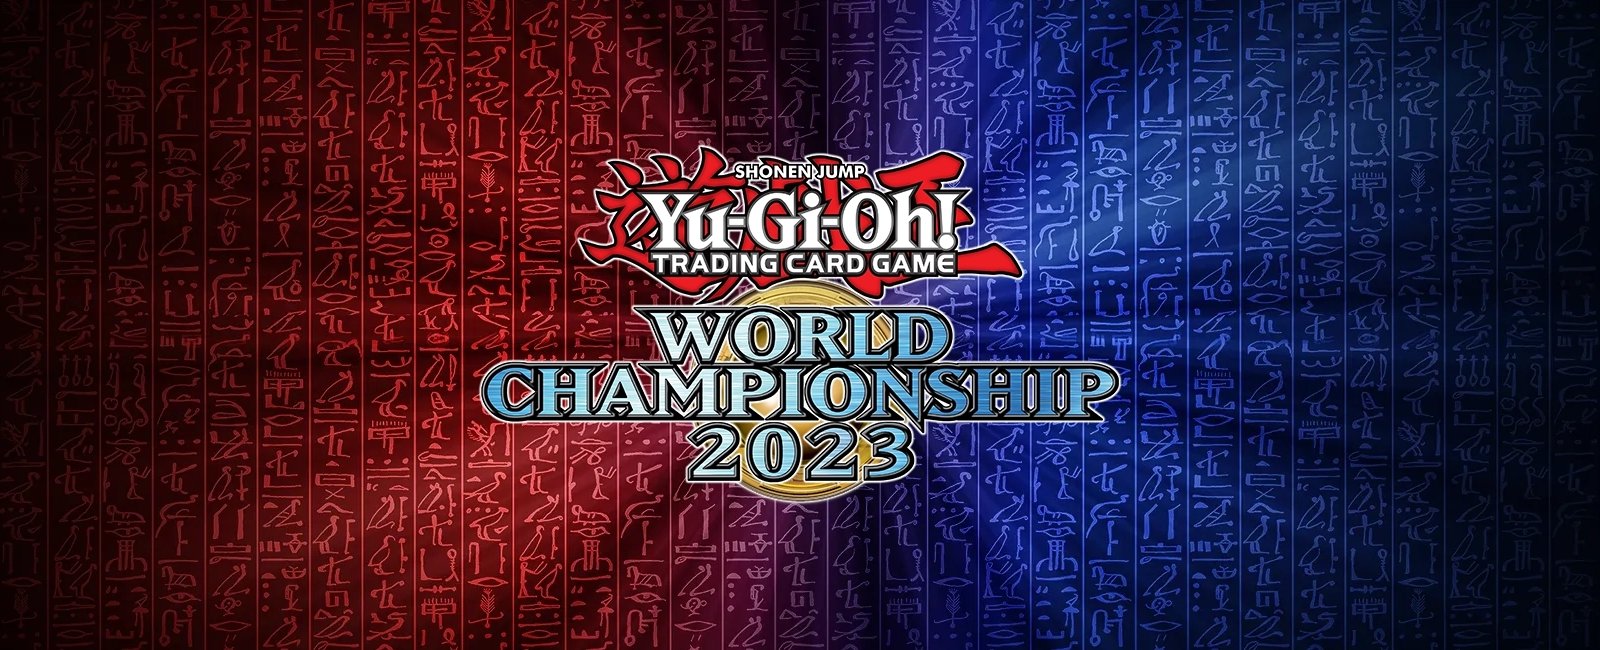 Yu-Gi-Oh! tutto quello che c’è da sapere prima dei mondiali di Tokyo